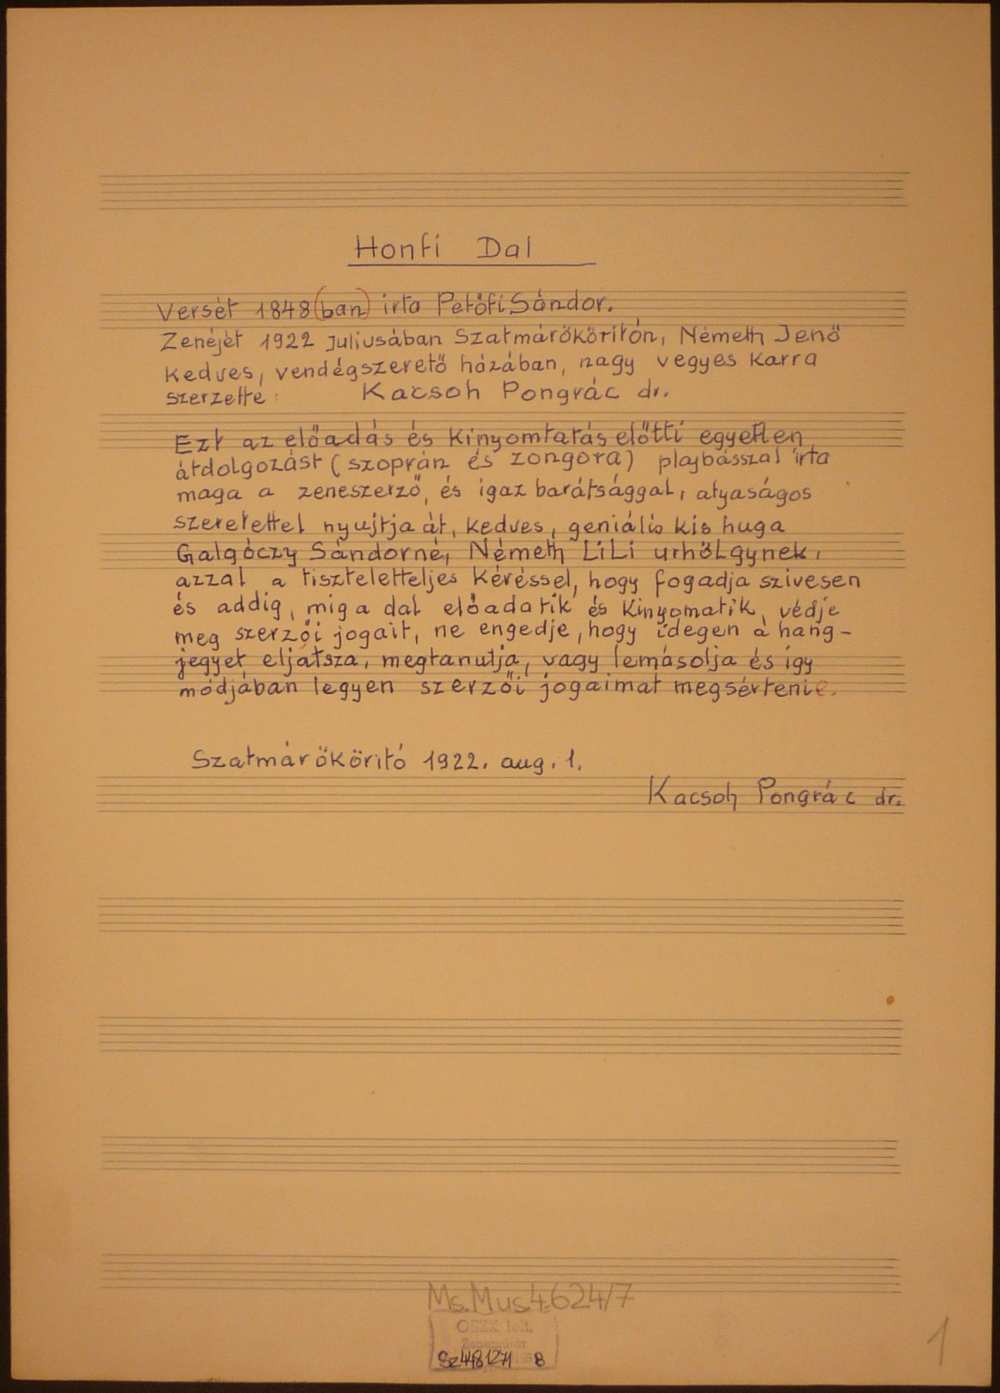 Kacsoh Pongrác: Honfi dal. A kézirat címoldala – Színháztörténeti és Zeneműtár, Ms. mus. 4.624/7